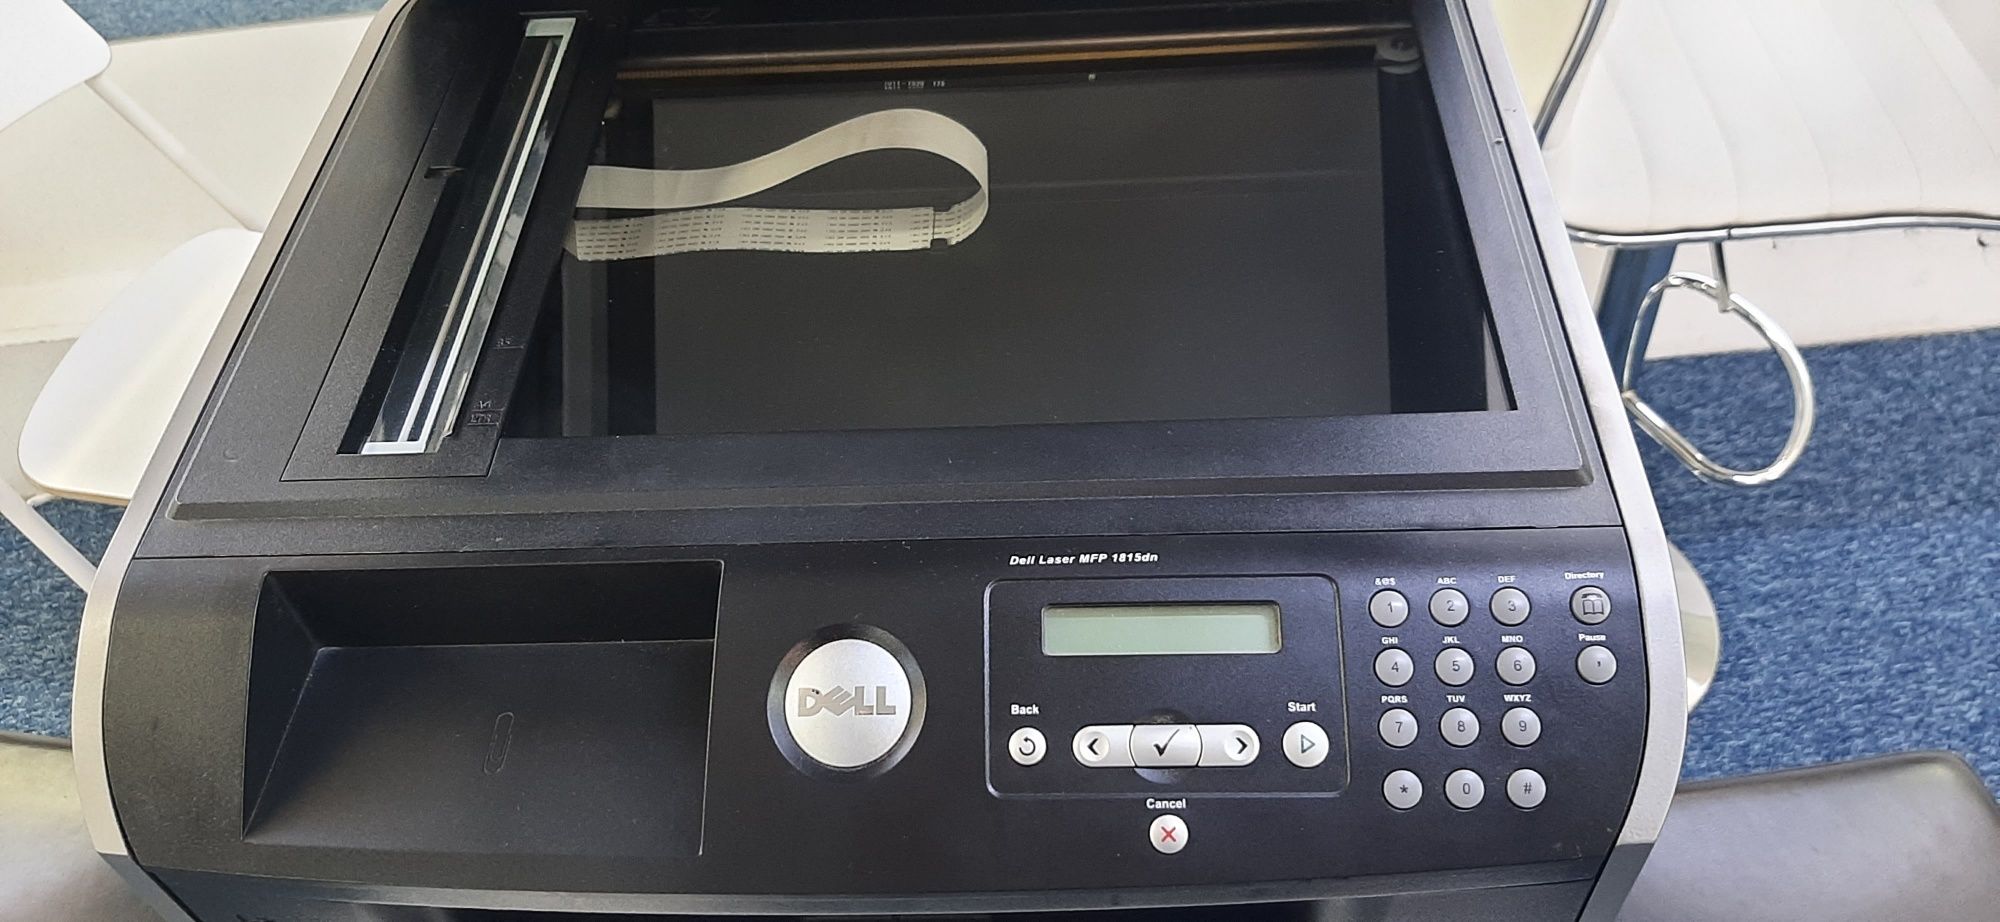 Dell Laser Printer 1815dn